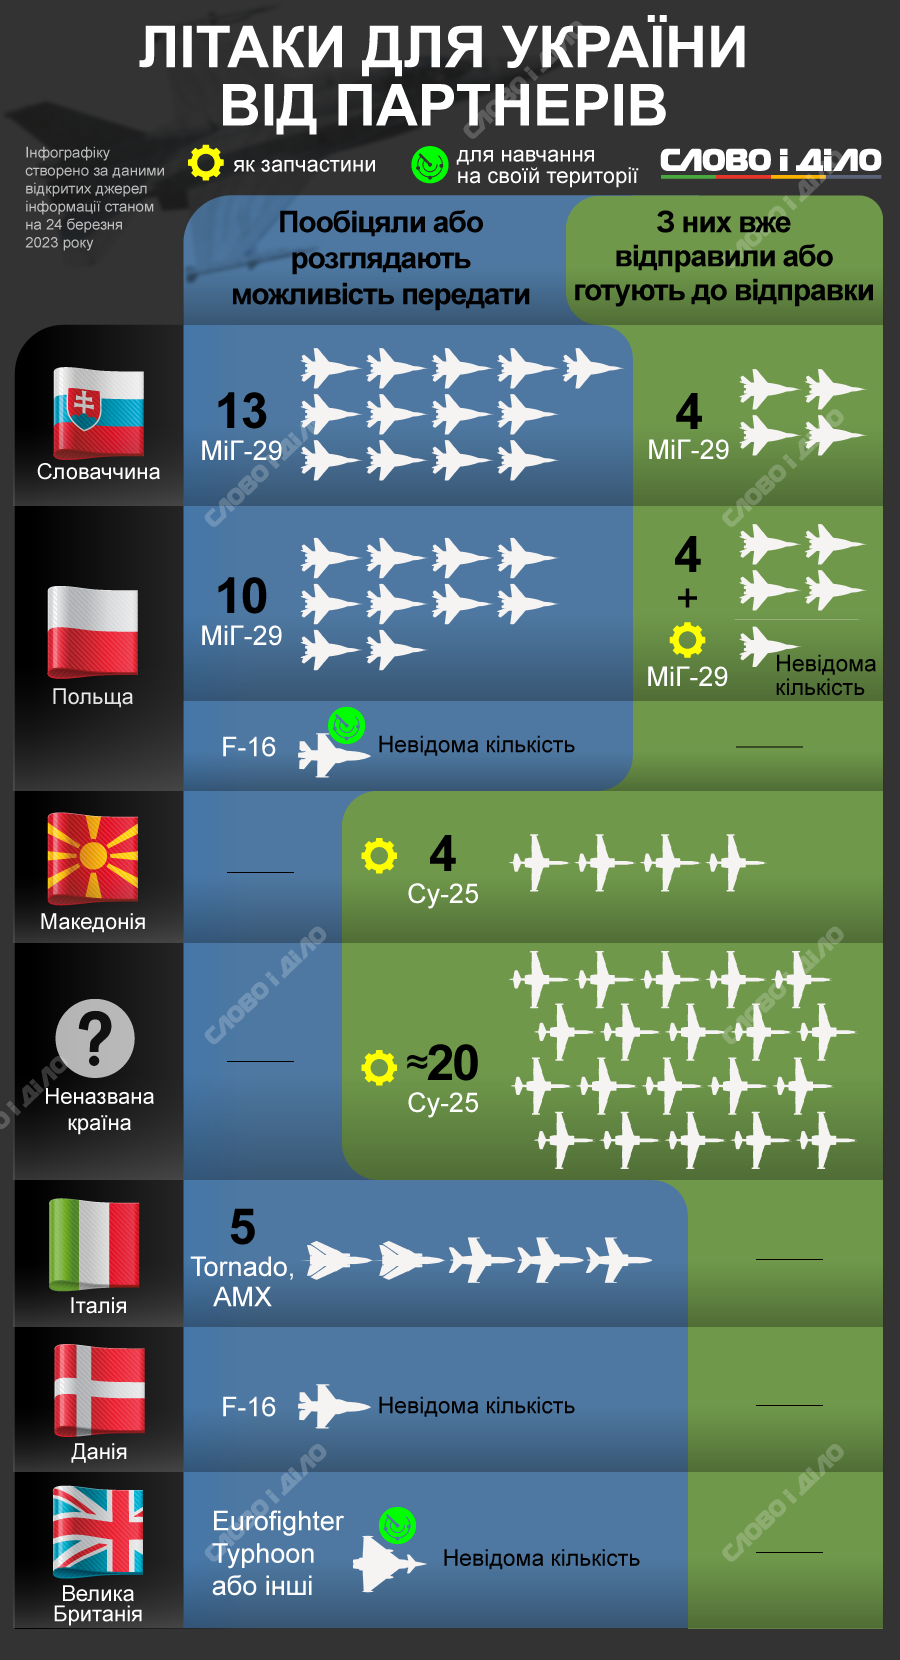 Сколько самолетов Украине обещали союзники, сколько уже передали: инфографика — фото